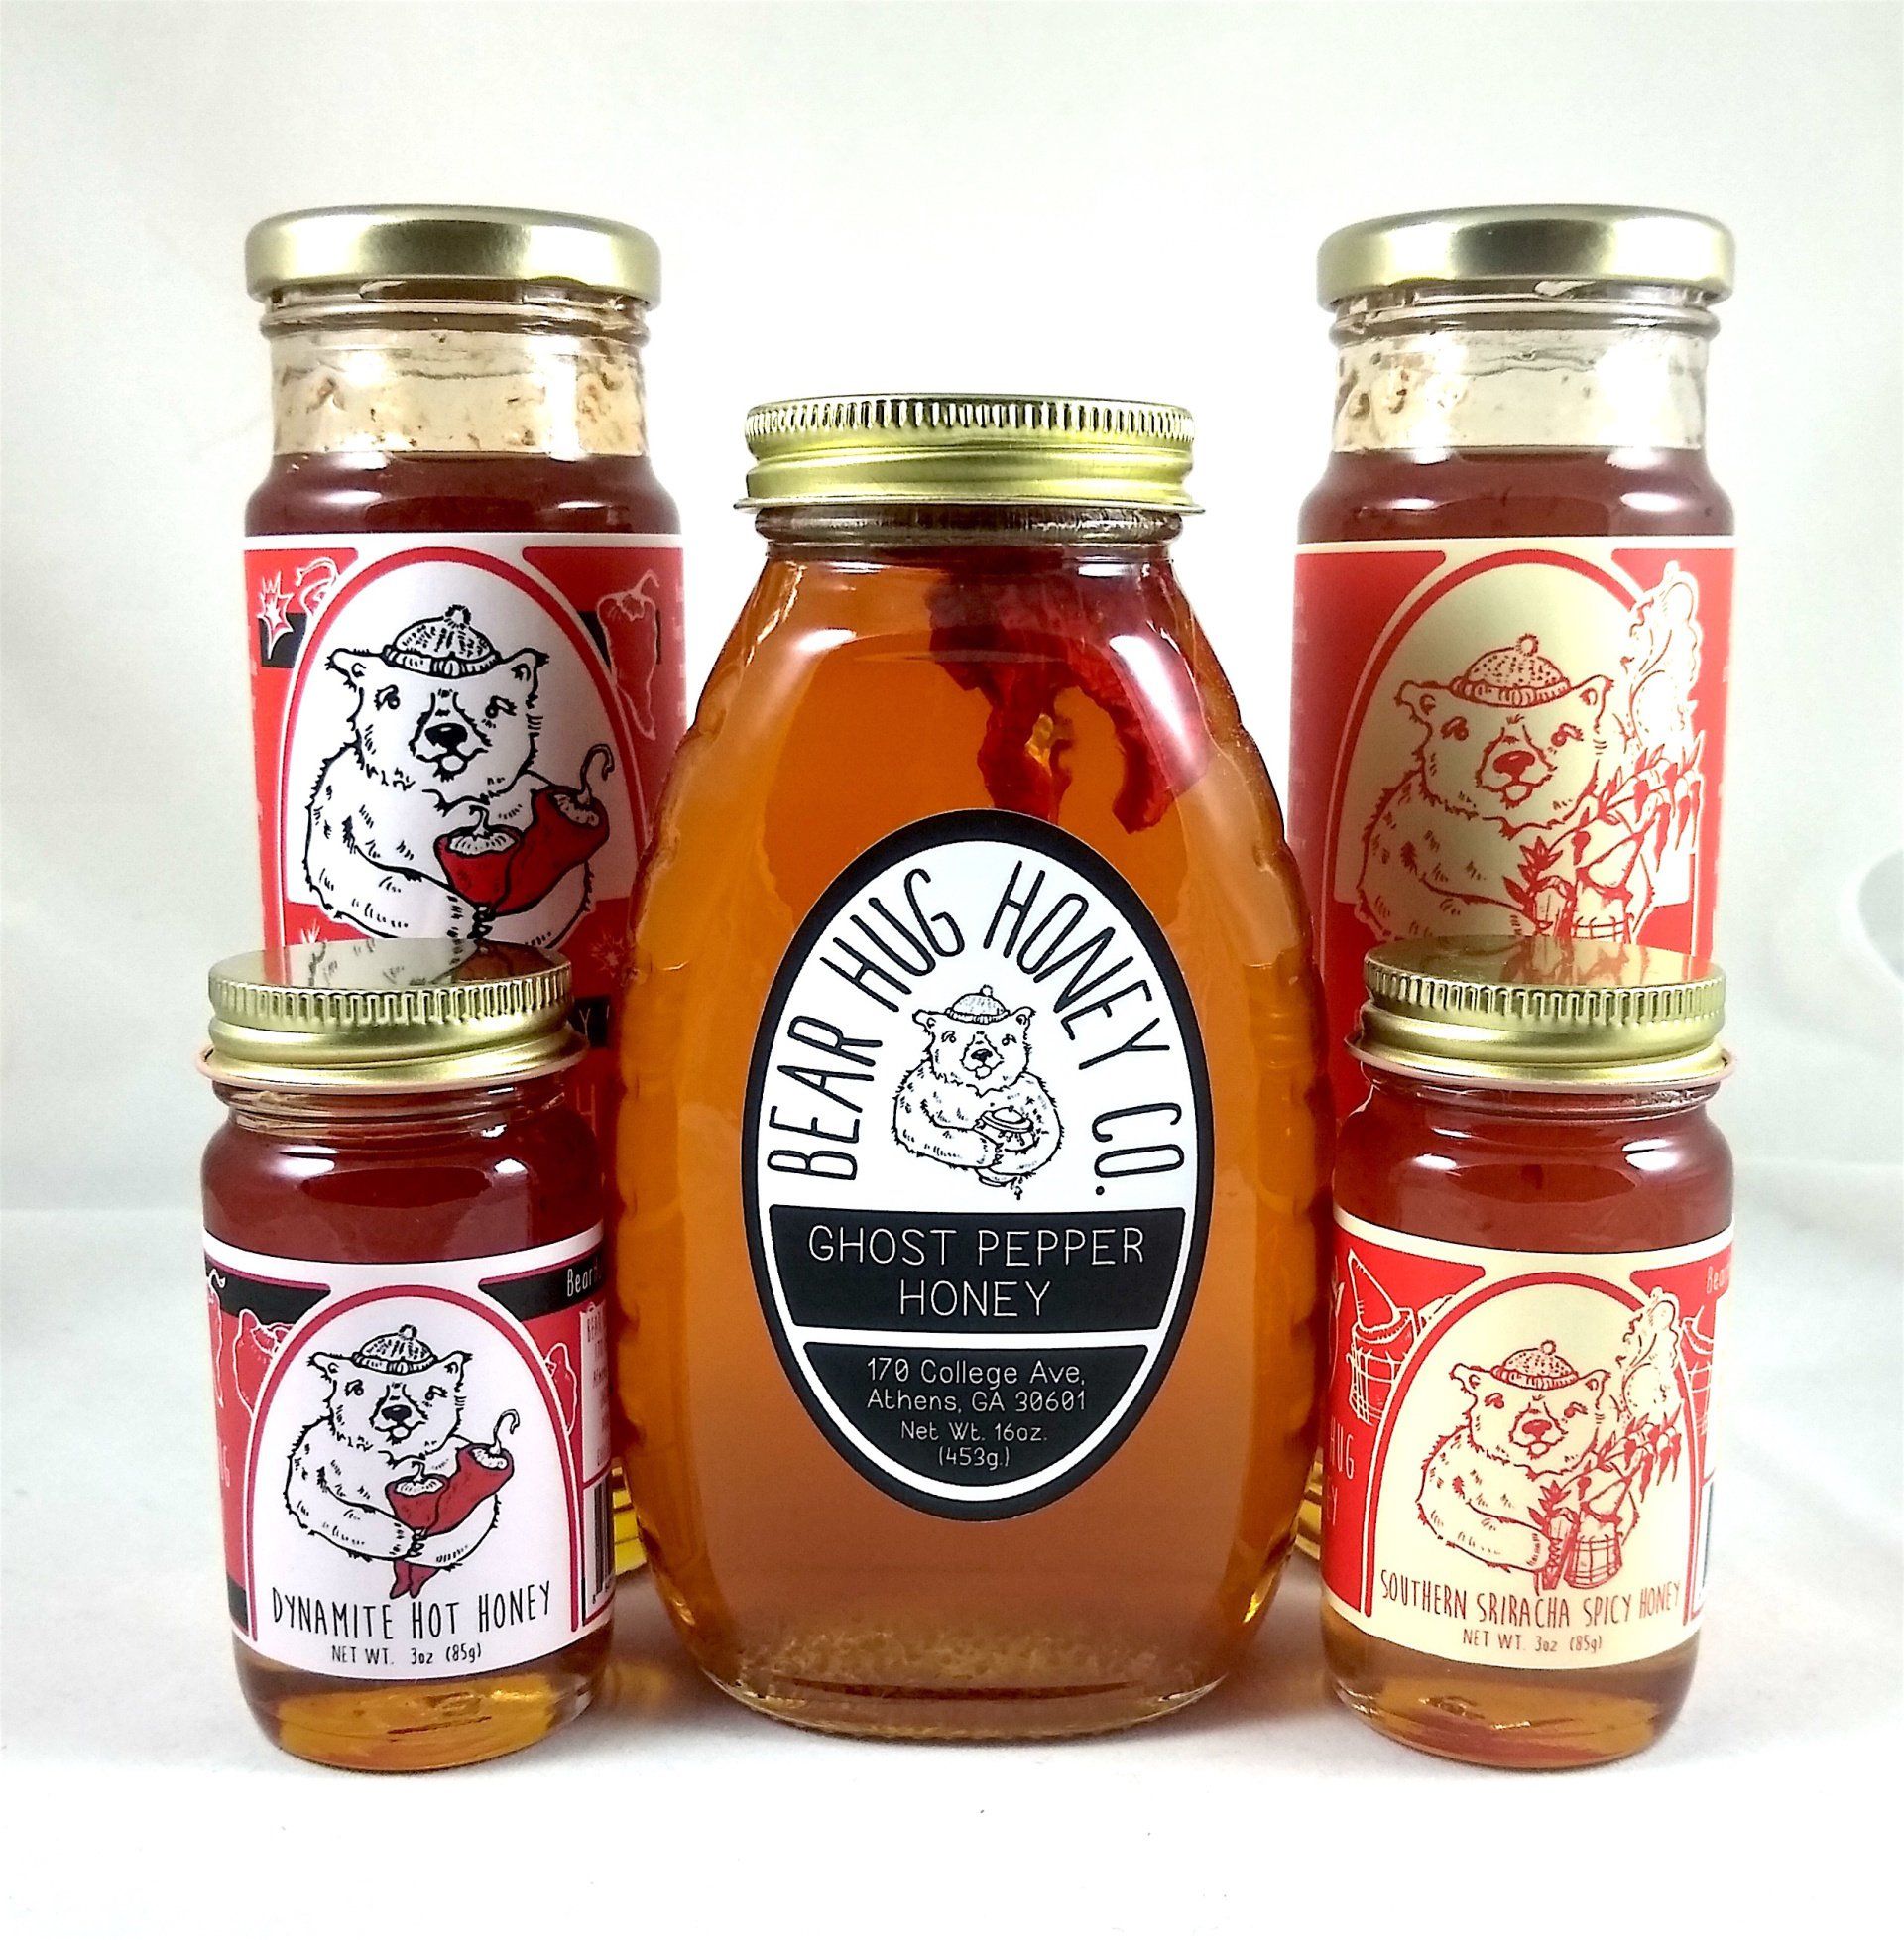 Louisiana Sweet Heat with Honey Hot Sauce Review – Polar Bear's Kitchen